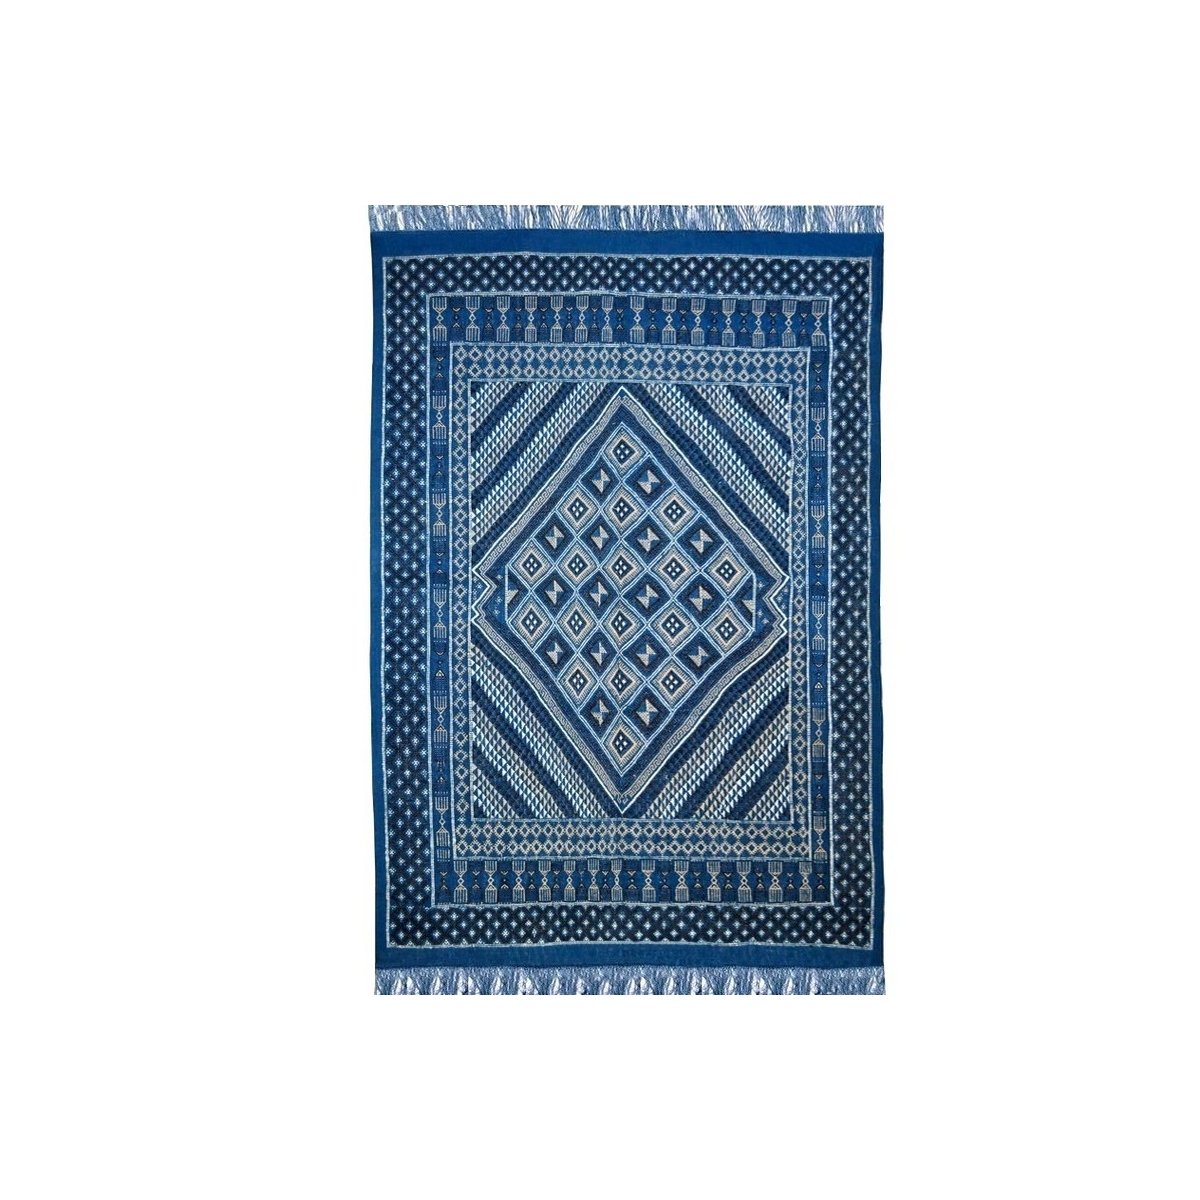 Berber tapijt Groot Tapijt Margoum Yamina 165x240 Blauw (Handgeweven, Wol, Tunesië) Tunesisch Margoum Tapijt uit de stad Kairoua